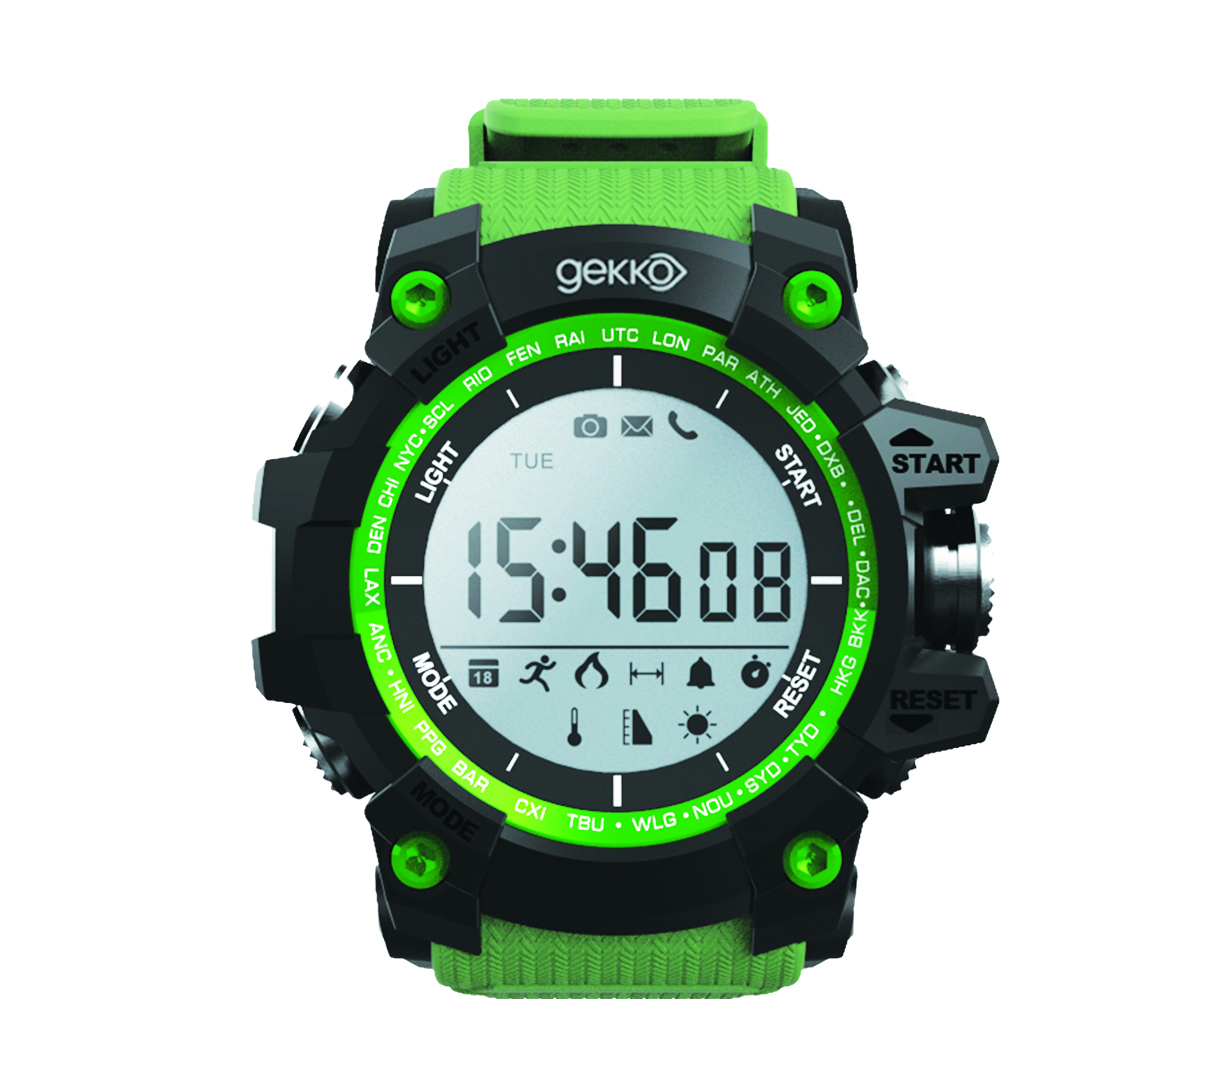 Sanzar Futureteq Launches The Gekko Gx1 – Hybrid Smartwatch